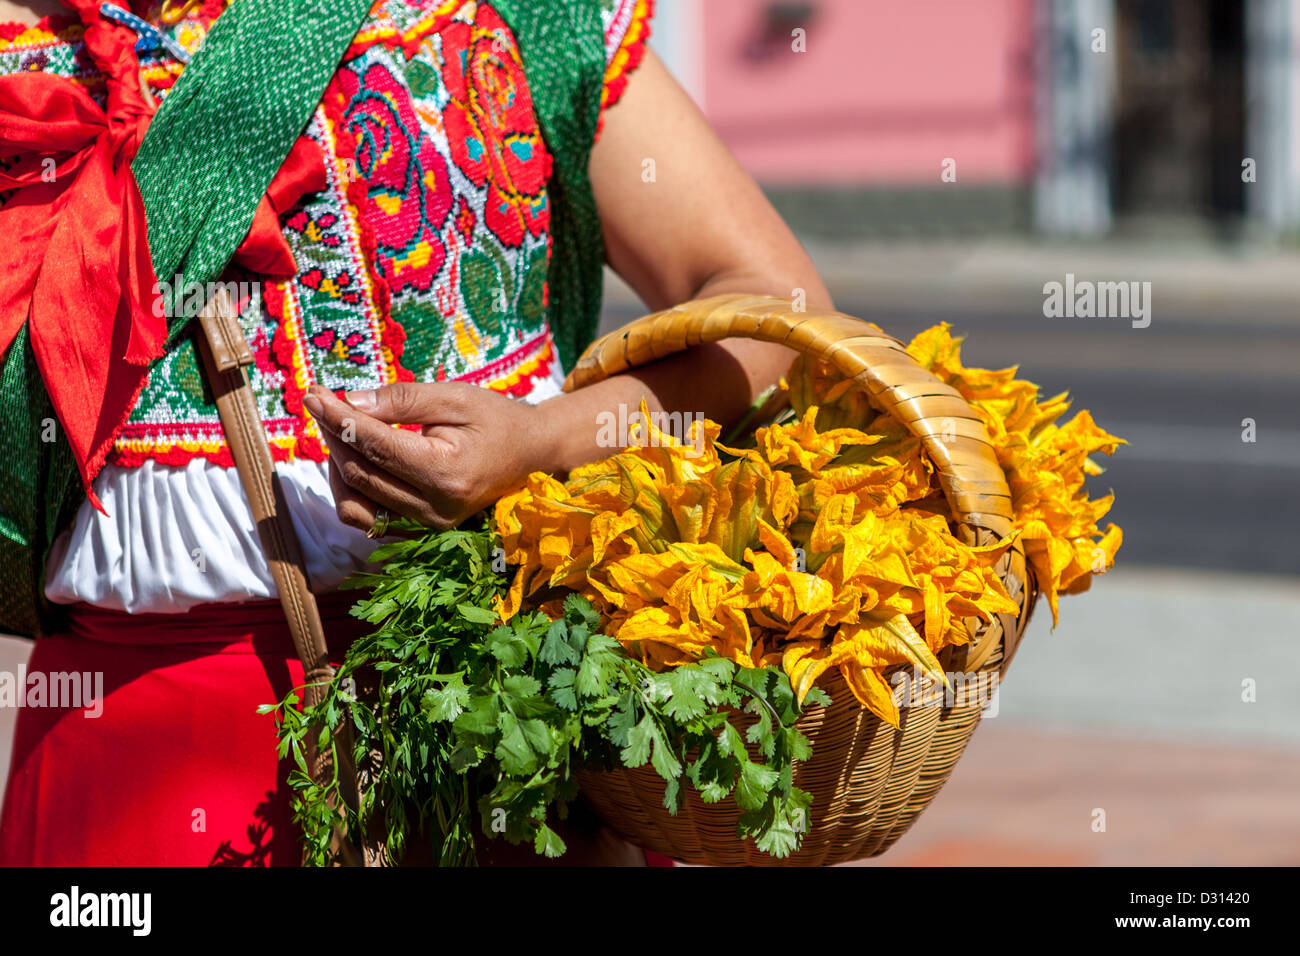 Femme latine en robe traditionnelle mexicaine avec un panier de légumes verts Banque D'Images